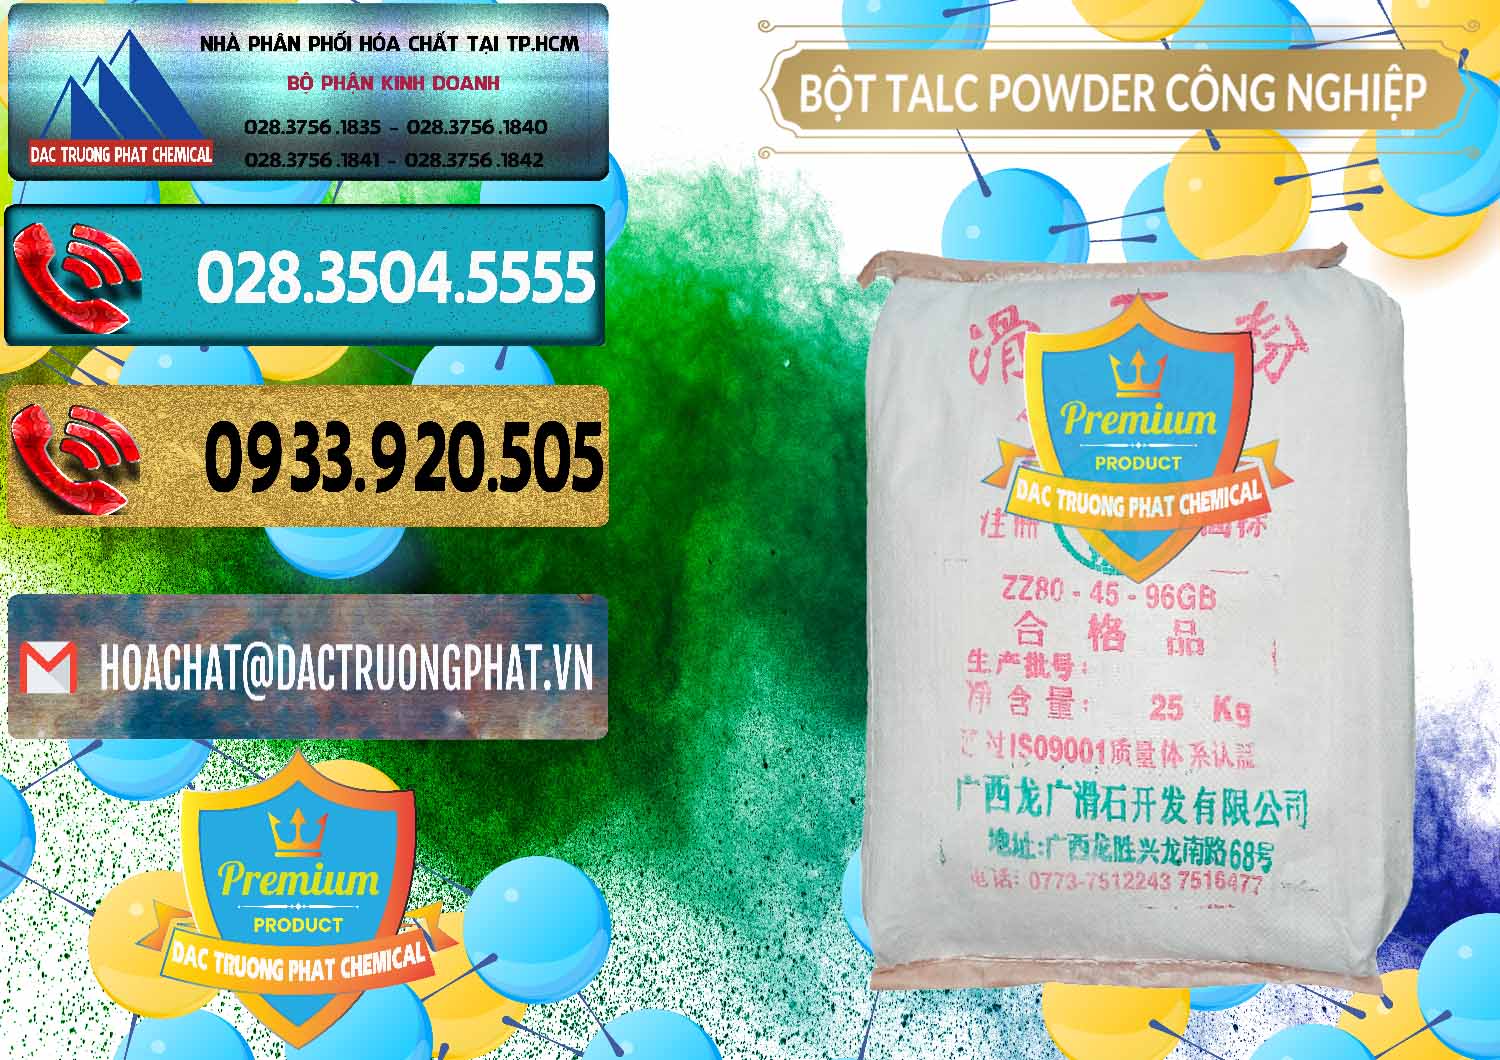 Bán và cung cấp Bột Talc Powder Công Nghiệp Trung Quốc China - 0037 - Công ty kinh doanh _ cung cấp hóa chất tại TP.HCM - hoachatdetnhuom.com